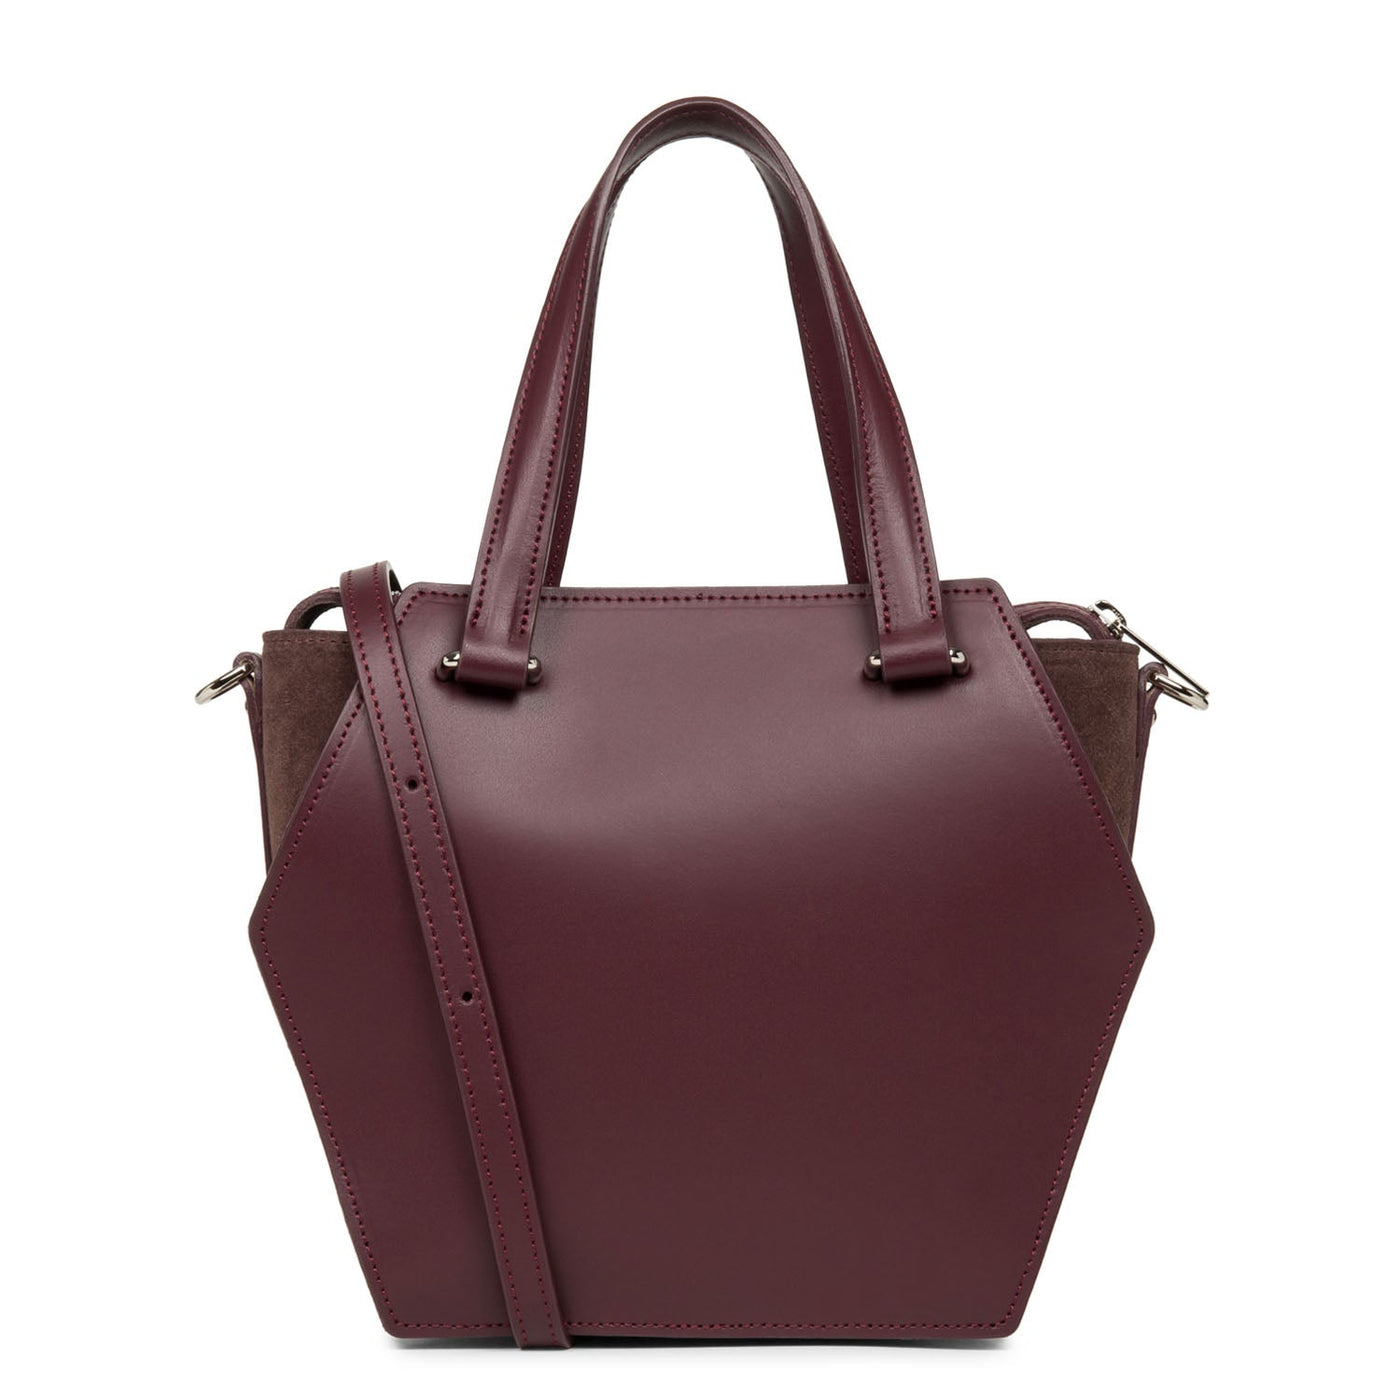 m handbag - smooth ruche #couleur_pourpre